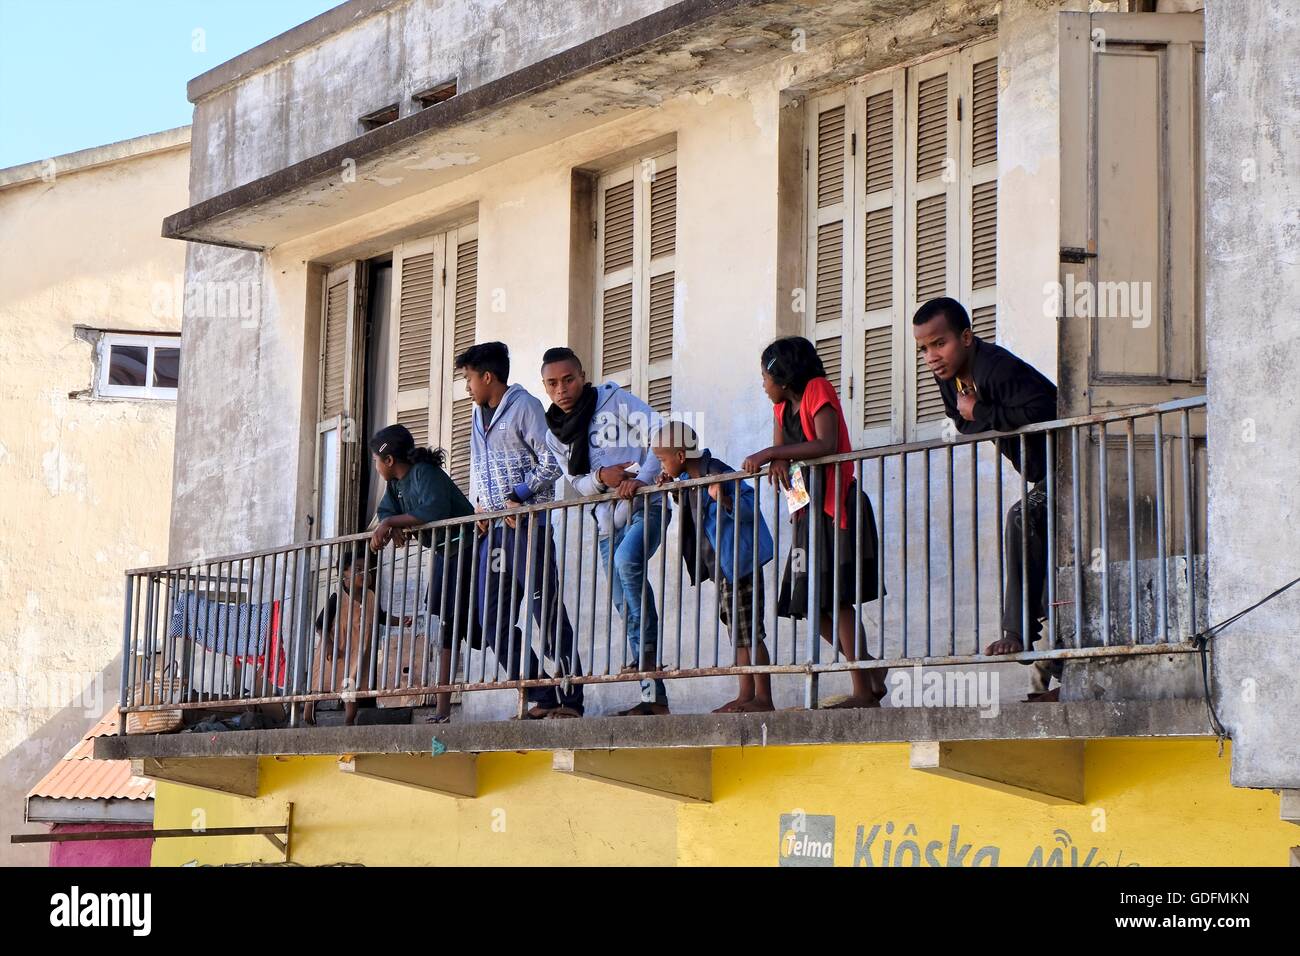 Malagasy spectators watching dare-devil riders from balcony in Antananarivo, Madagascar Stock Photo